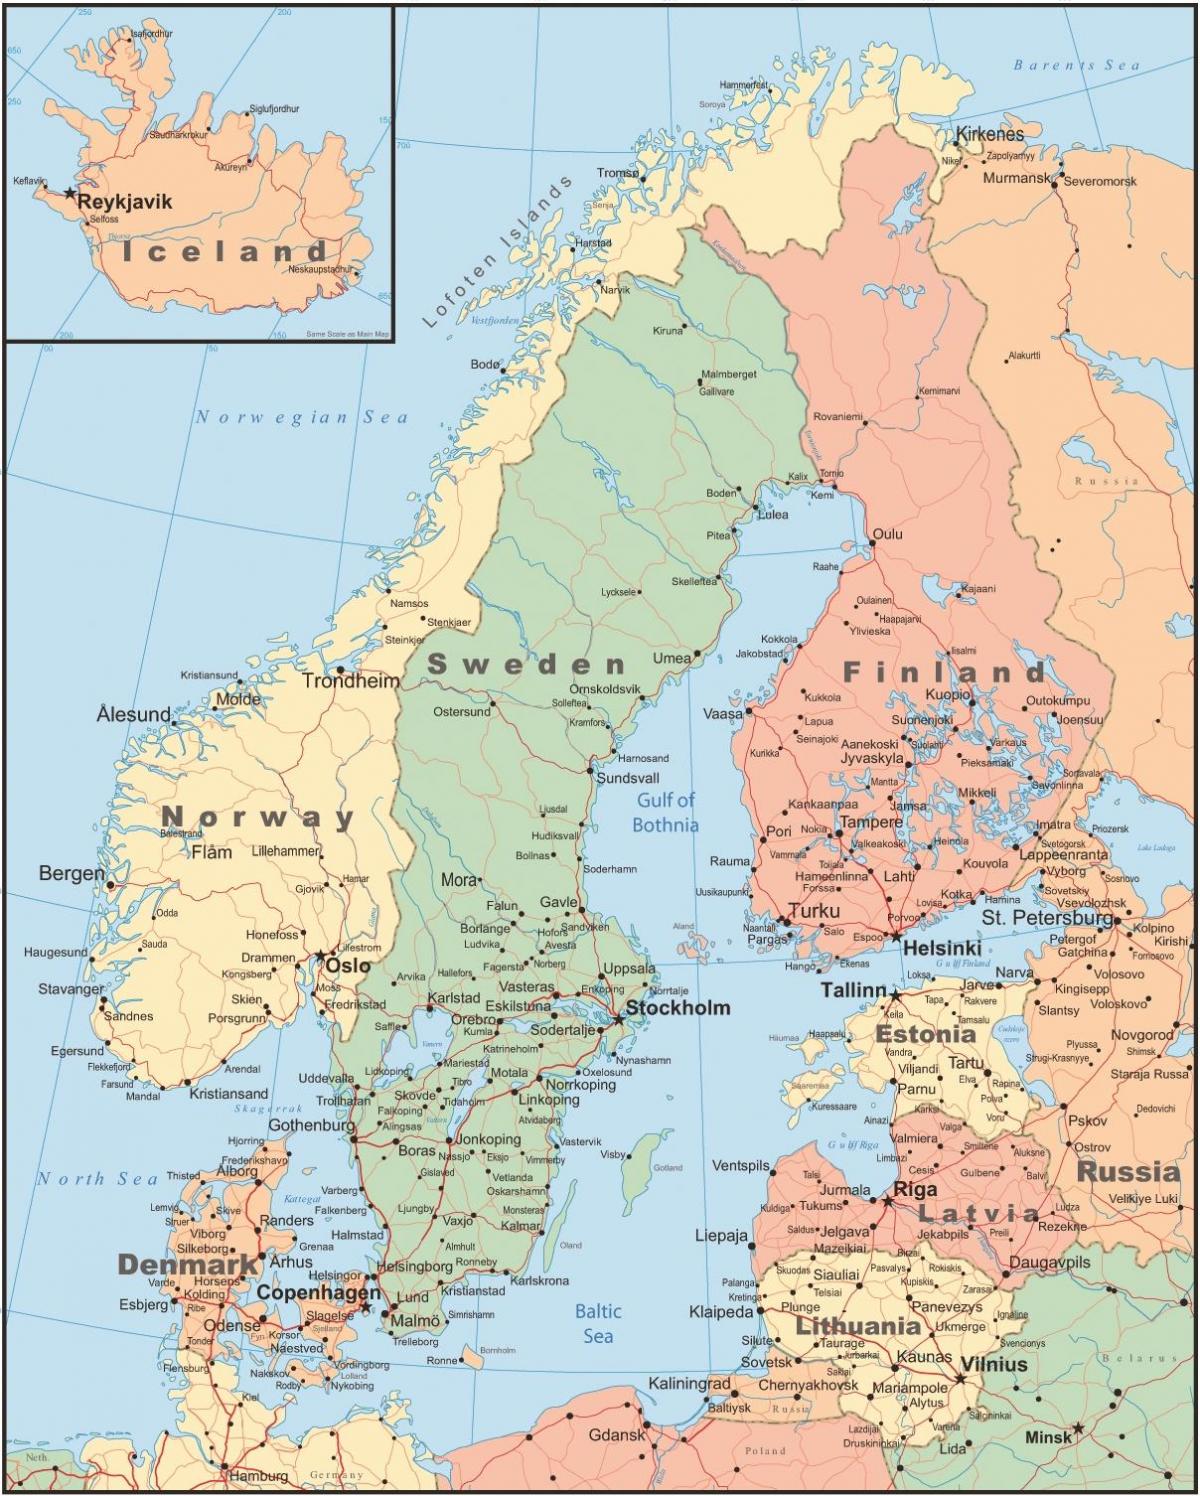 Քարտեզ Ֆինլանդիայի եւ հարեւան երկրների